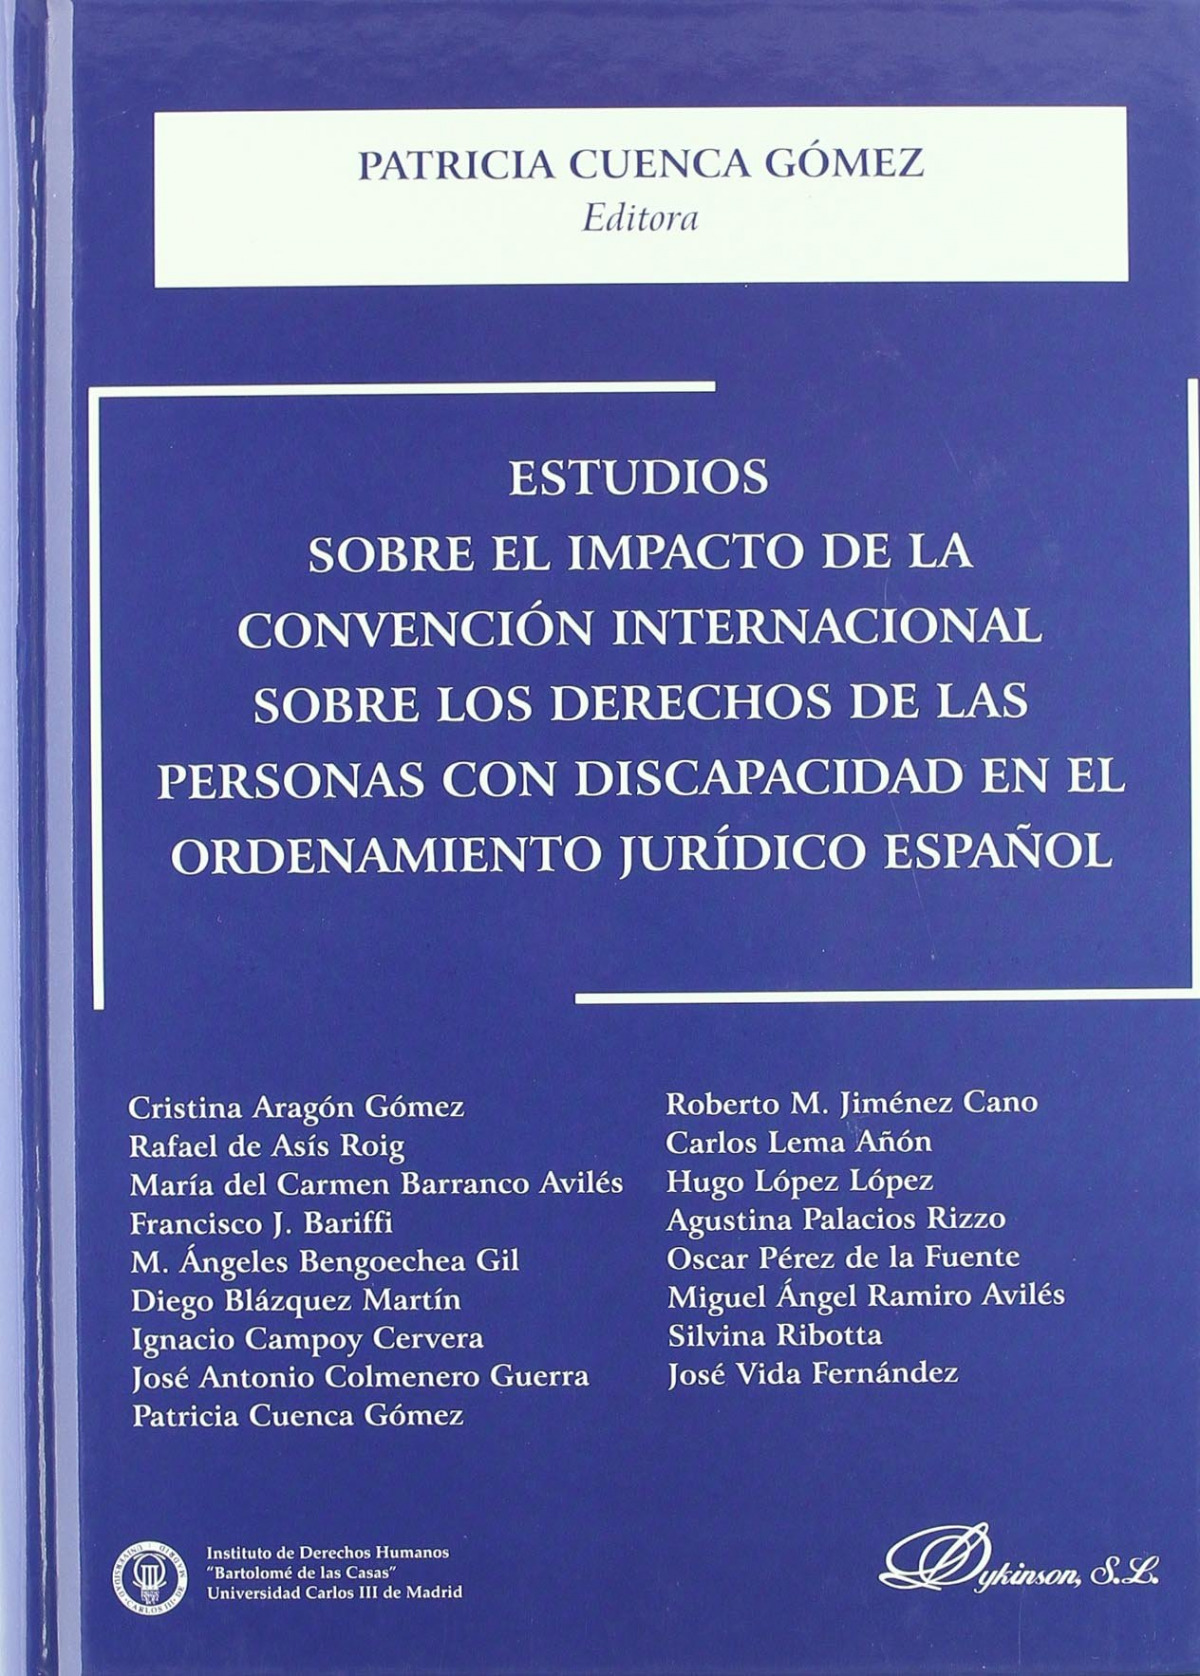 Estudios sobre el impacto de la convención internacional sobre los der - Cuenca Gómez et al., Patricia